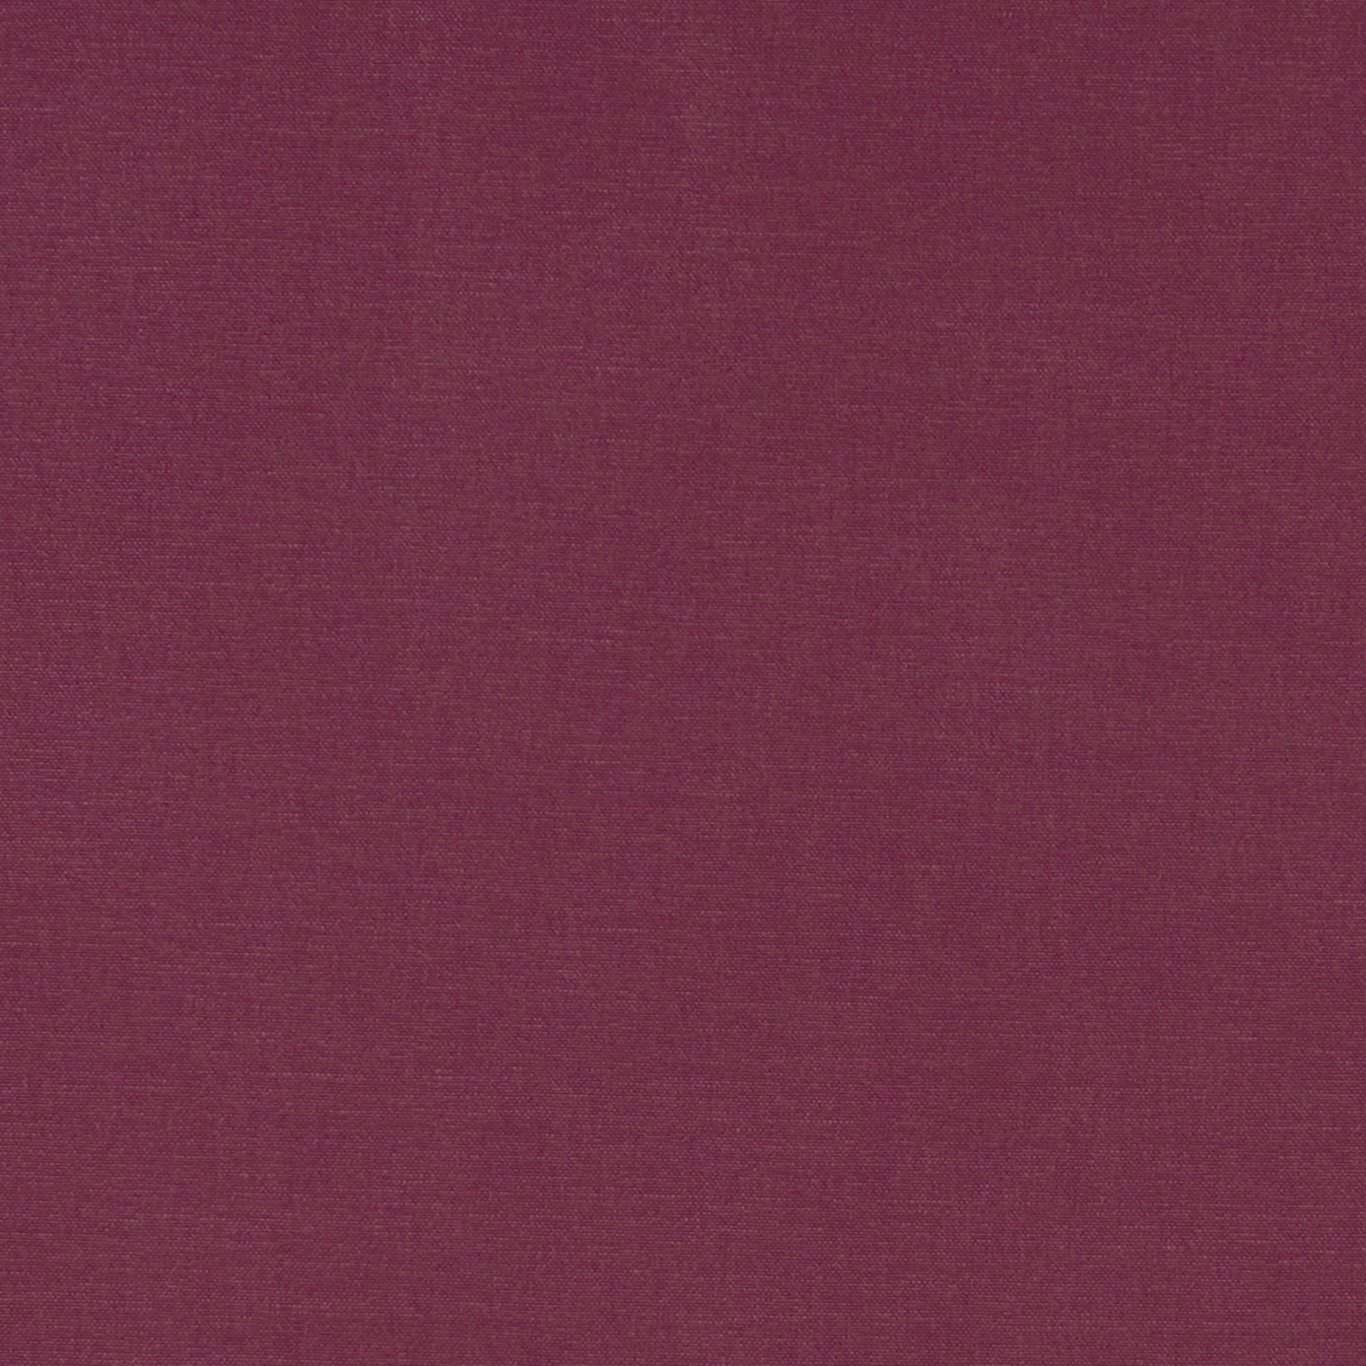 Alora Grape Fabric by CNC